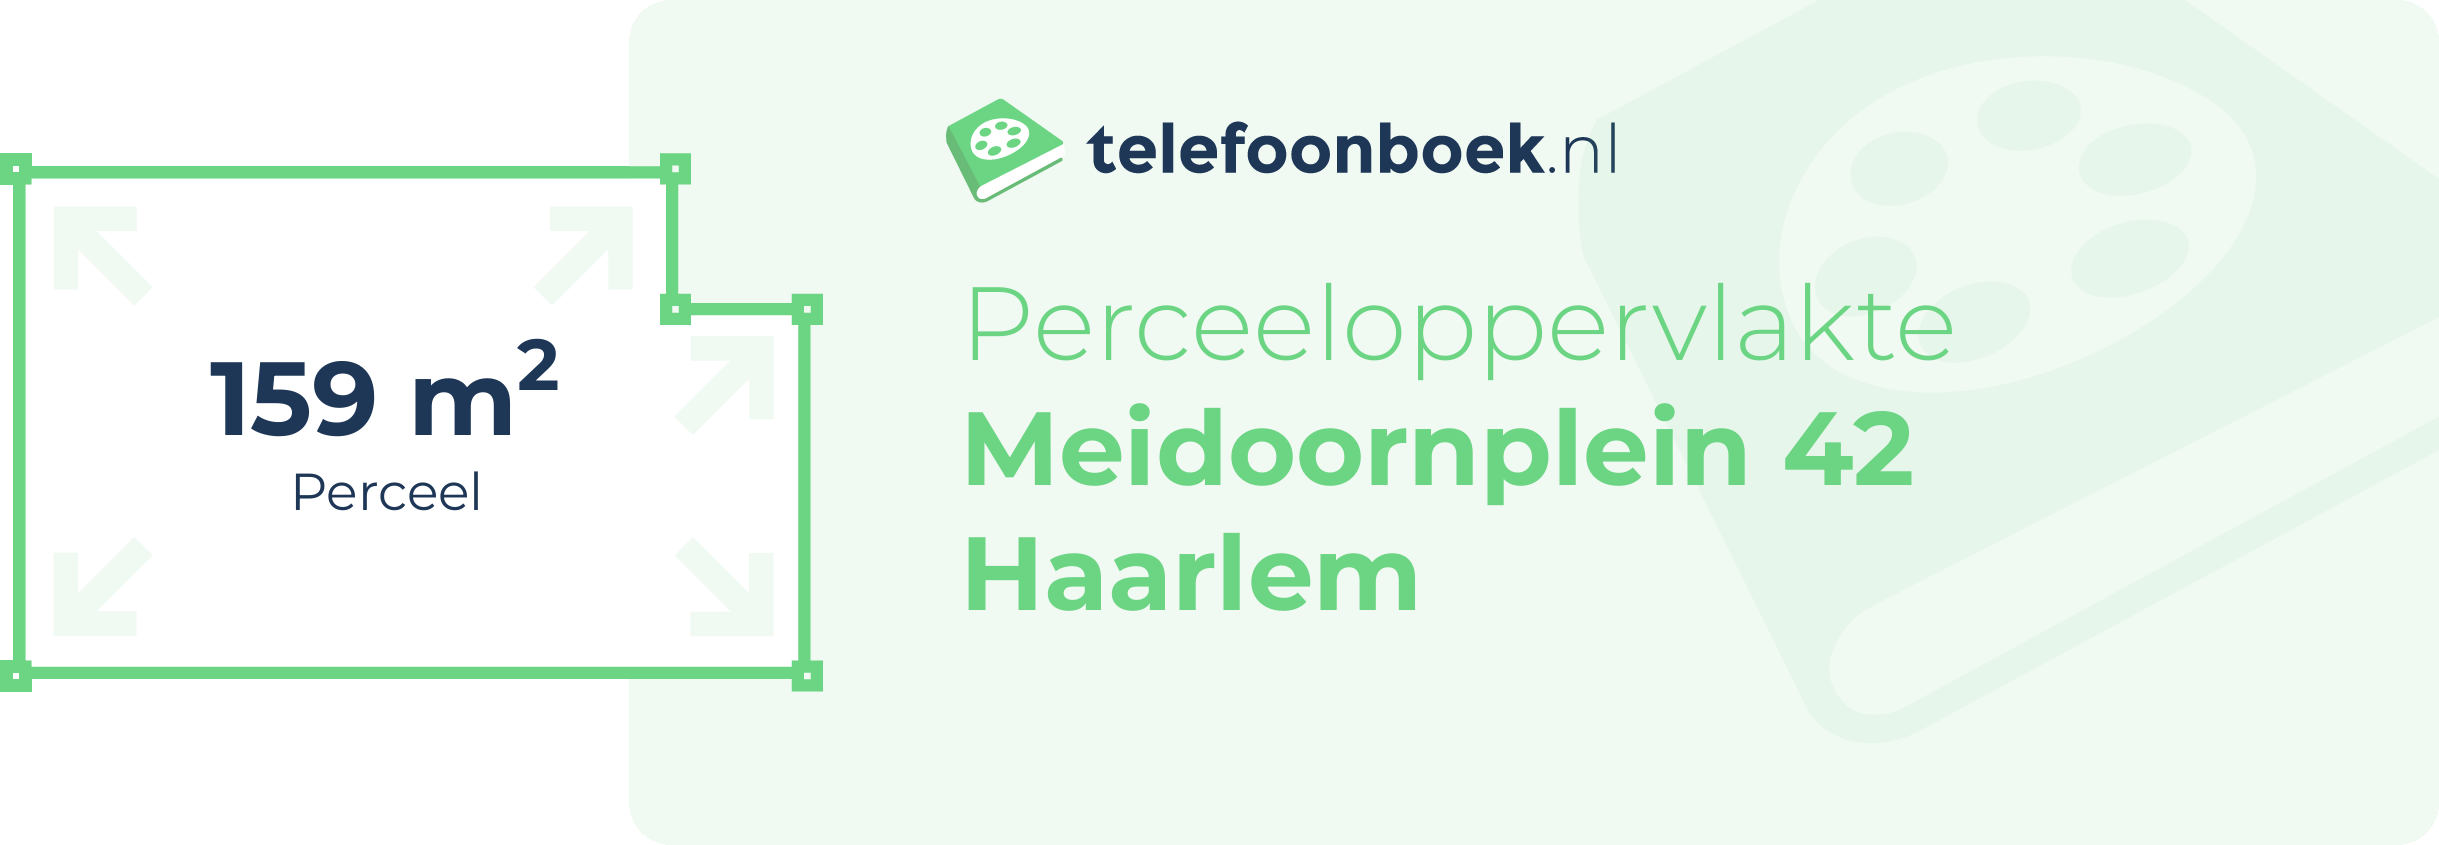 Perceeloppervlakte Meidoornplein 42 Haarlem